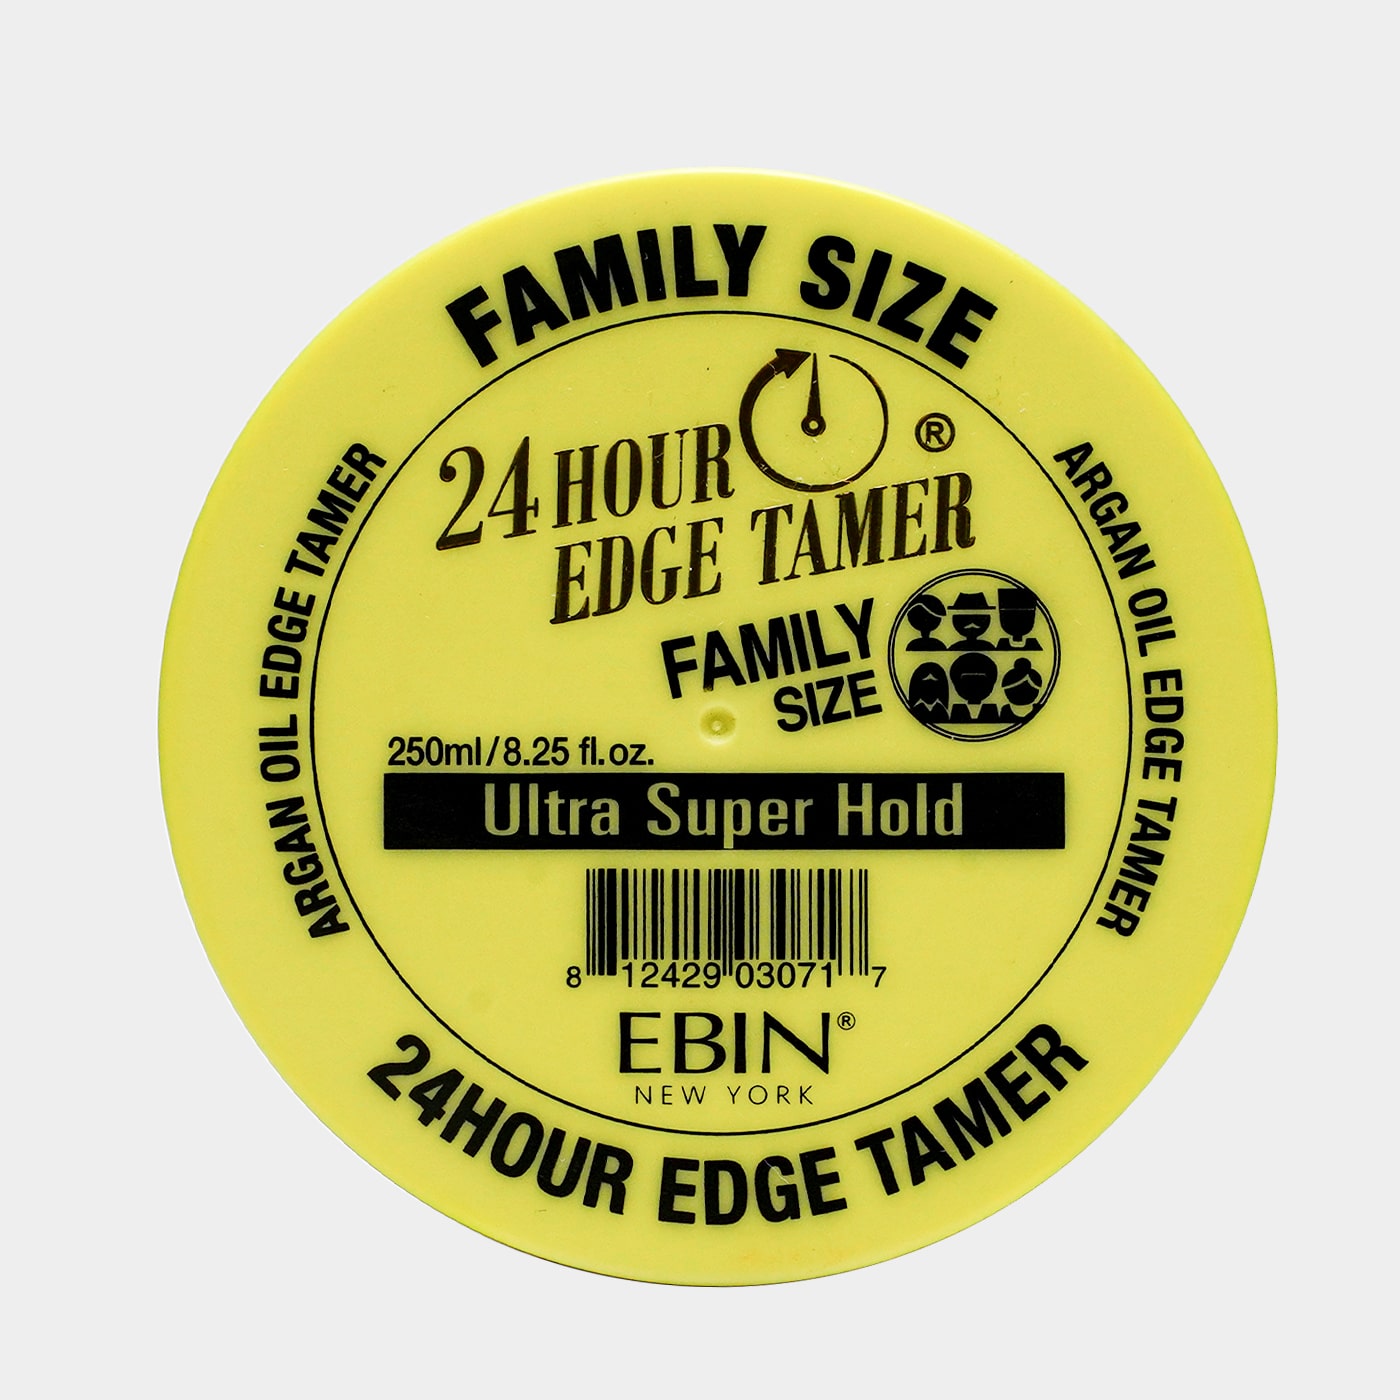 24 Hour Edge Tamer - Ultra Super Hold | EBIN NEW YORK